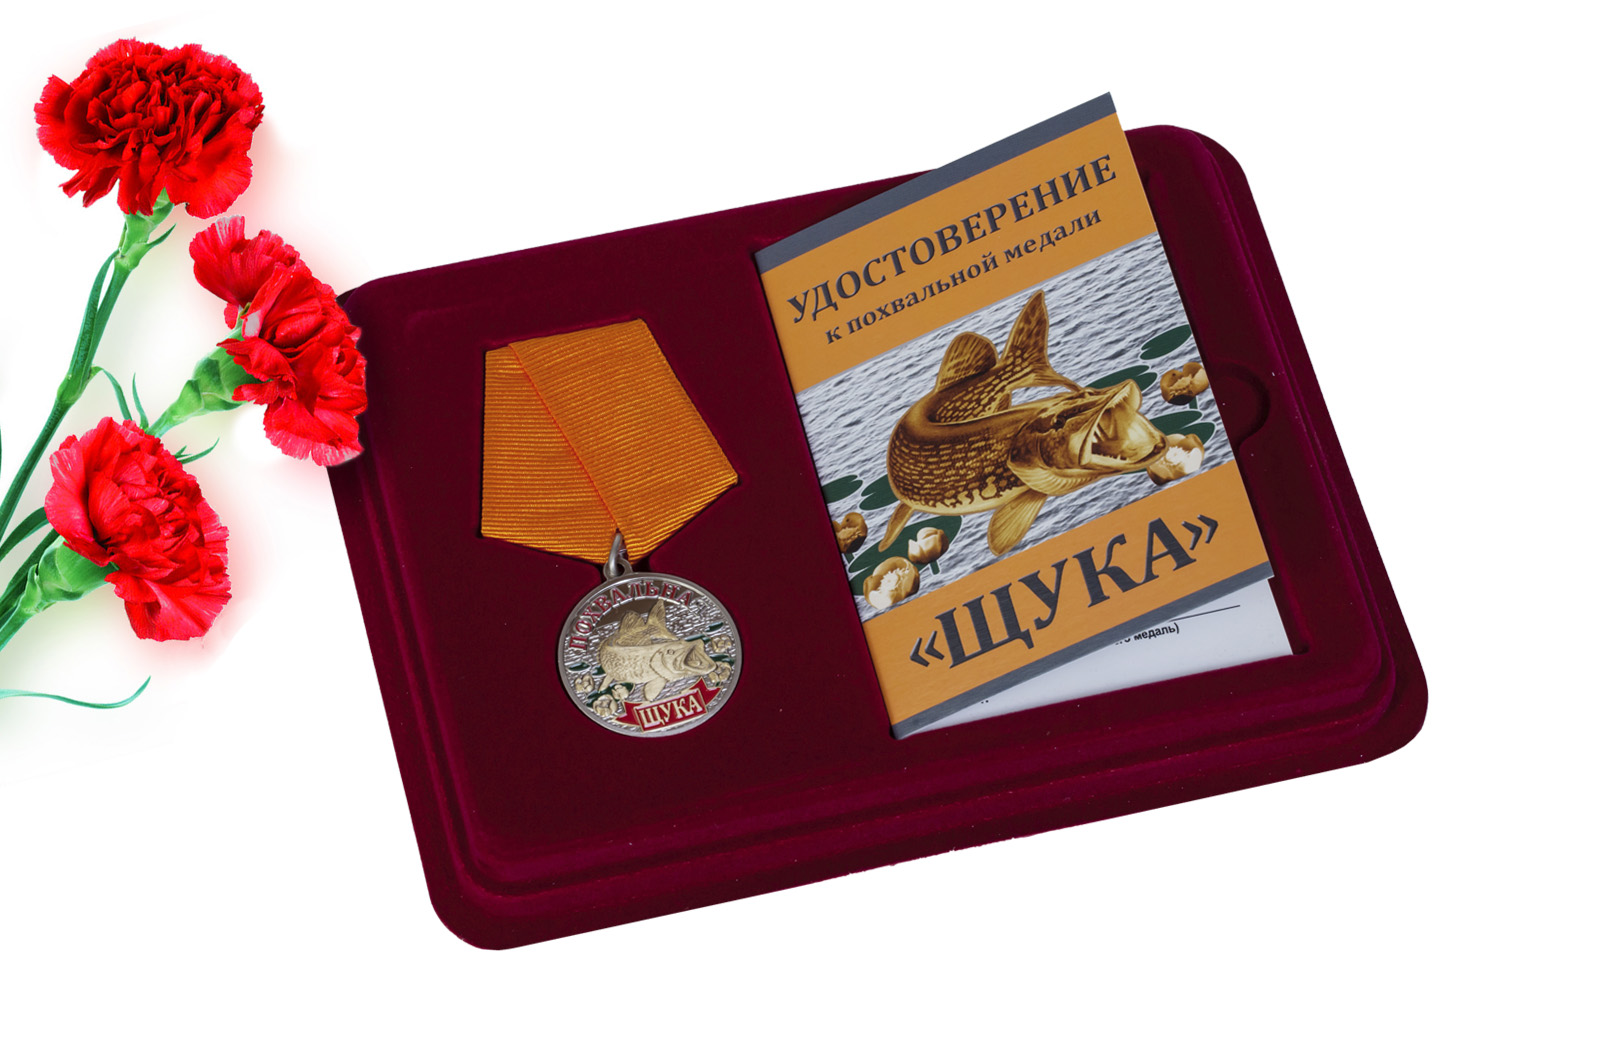 Купить медаль похвальную Щука в подарок рыбаку